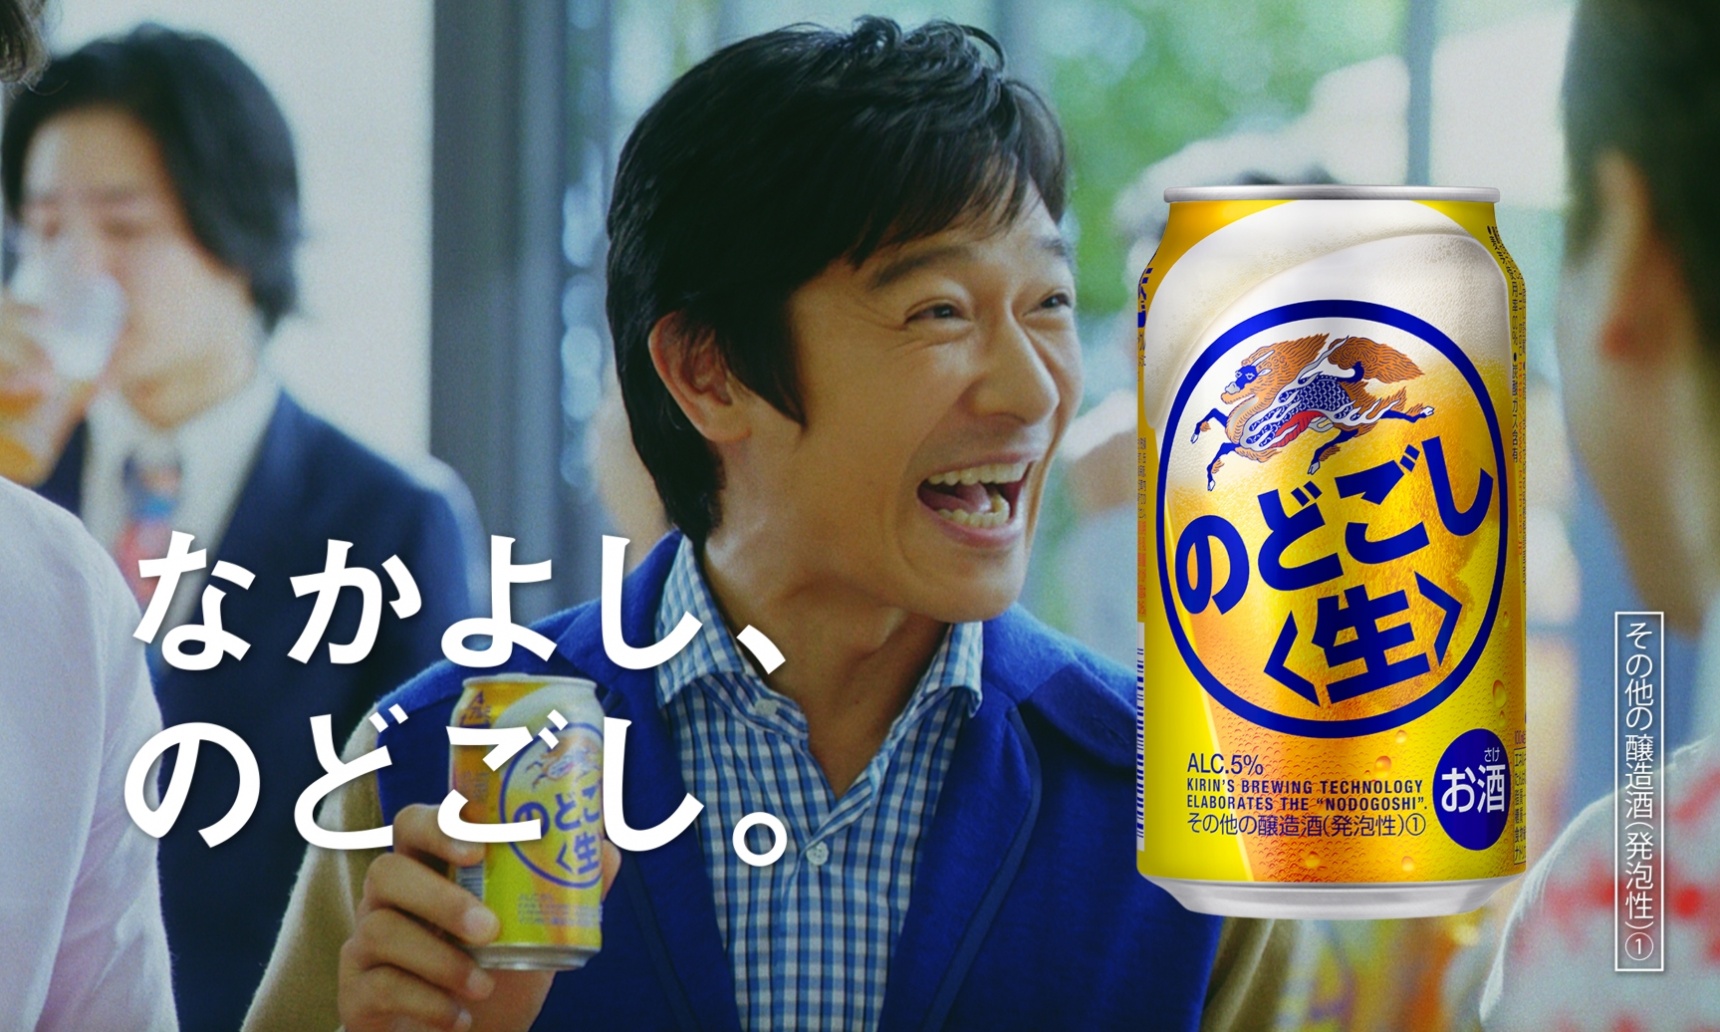 日本的啤酒廣告和廣告中的男明星